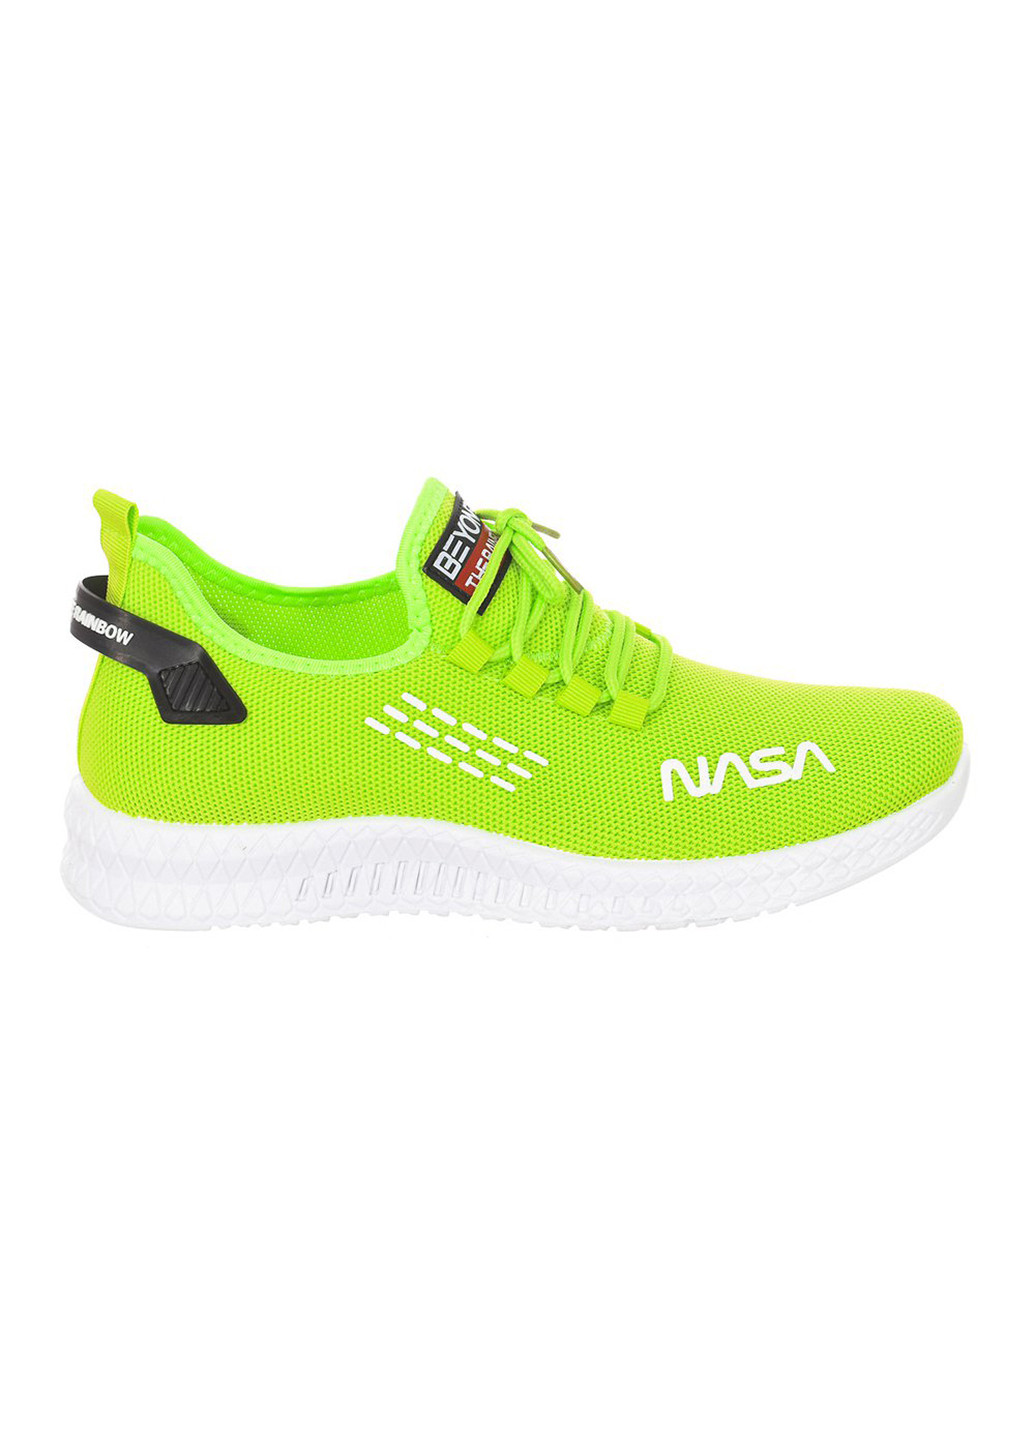 Зеленые кроссовки trainers uni Nasa